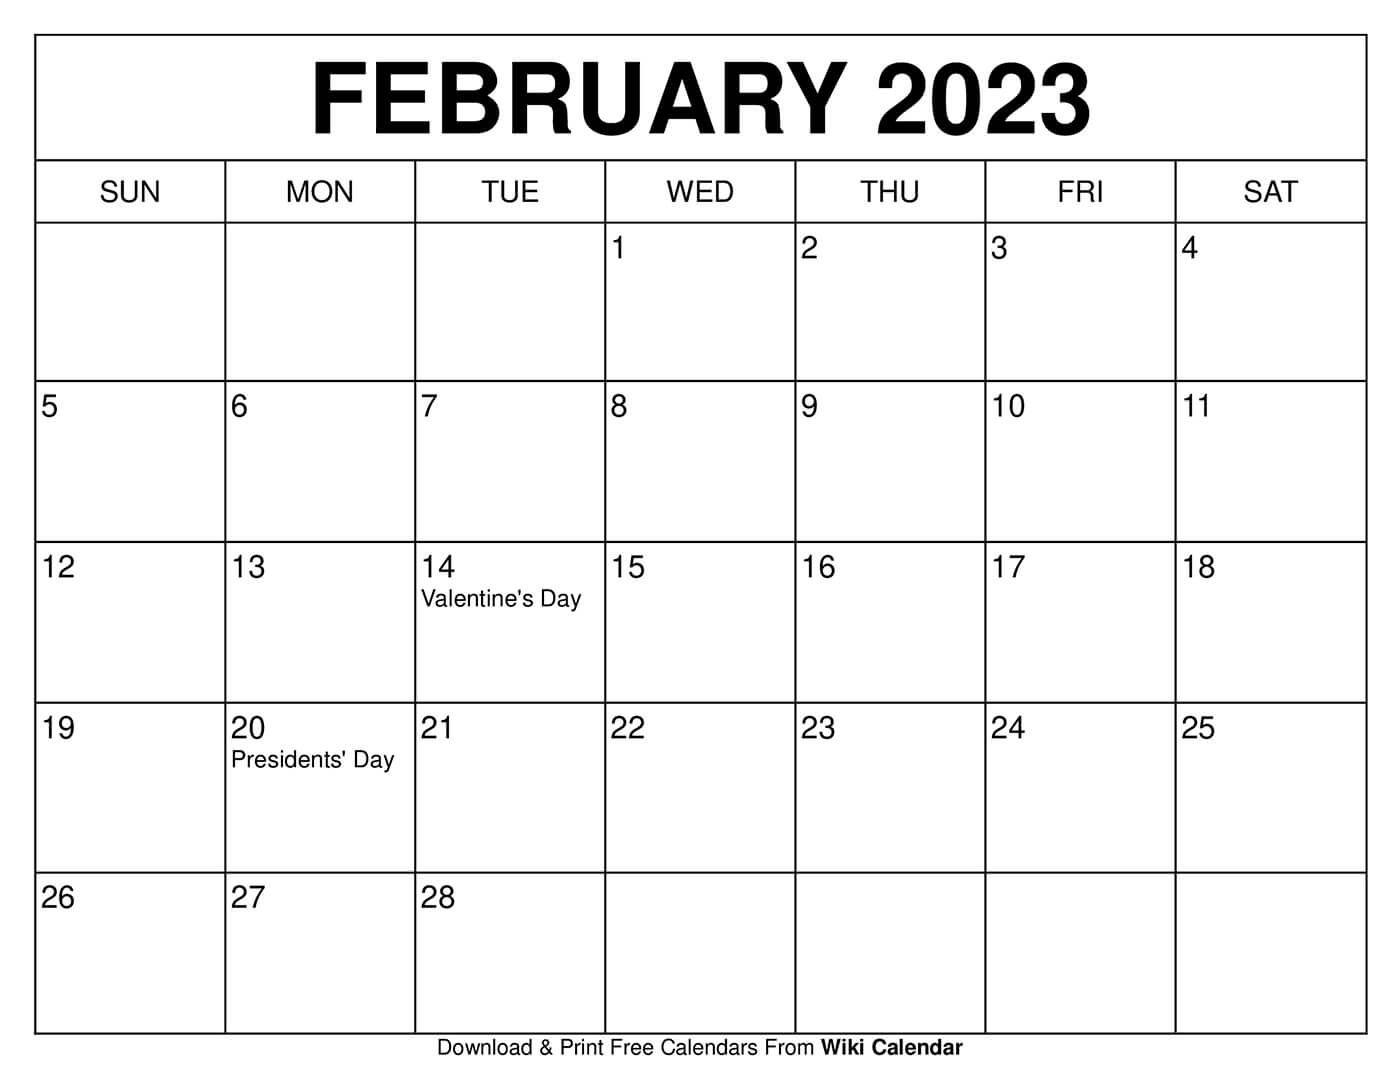 feb-2023-calendar-get-calendar-2023-update